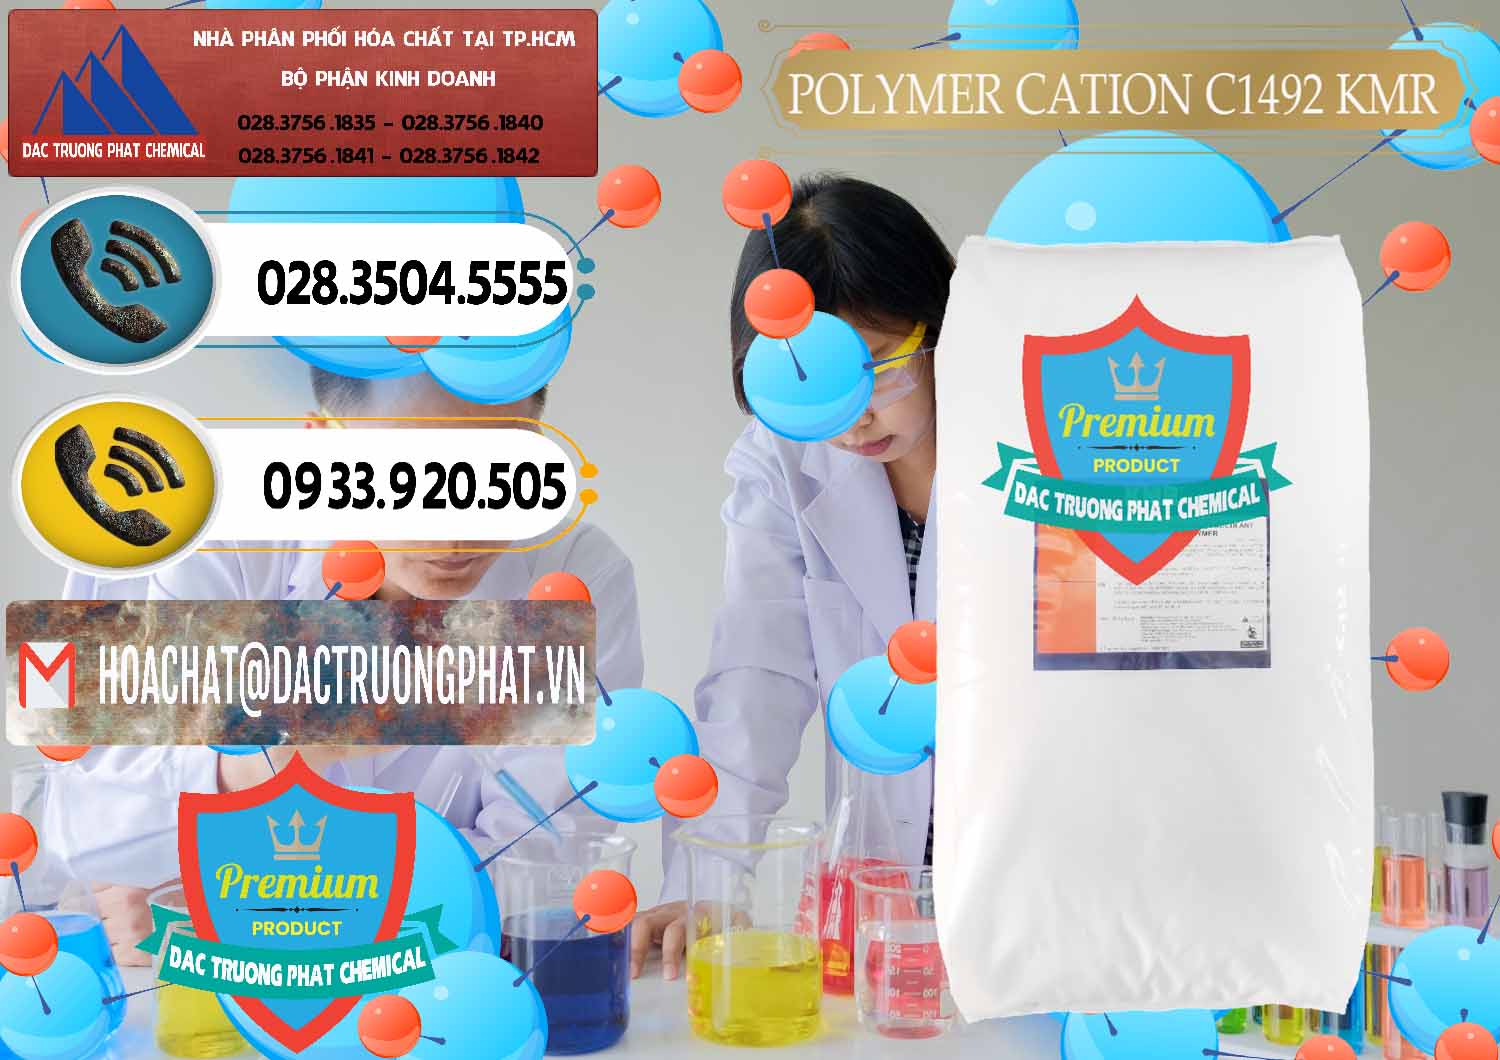 Đơn vị chuyên nhập khẩu _ bán Polymer Cation C1492 - KMR Anh Quốc England - 0121 - Công ty chuyên nhập khẩu và phân phối hóa chất tại TP.HCM - hoachatdetnhuom.vn